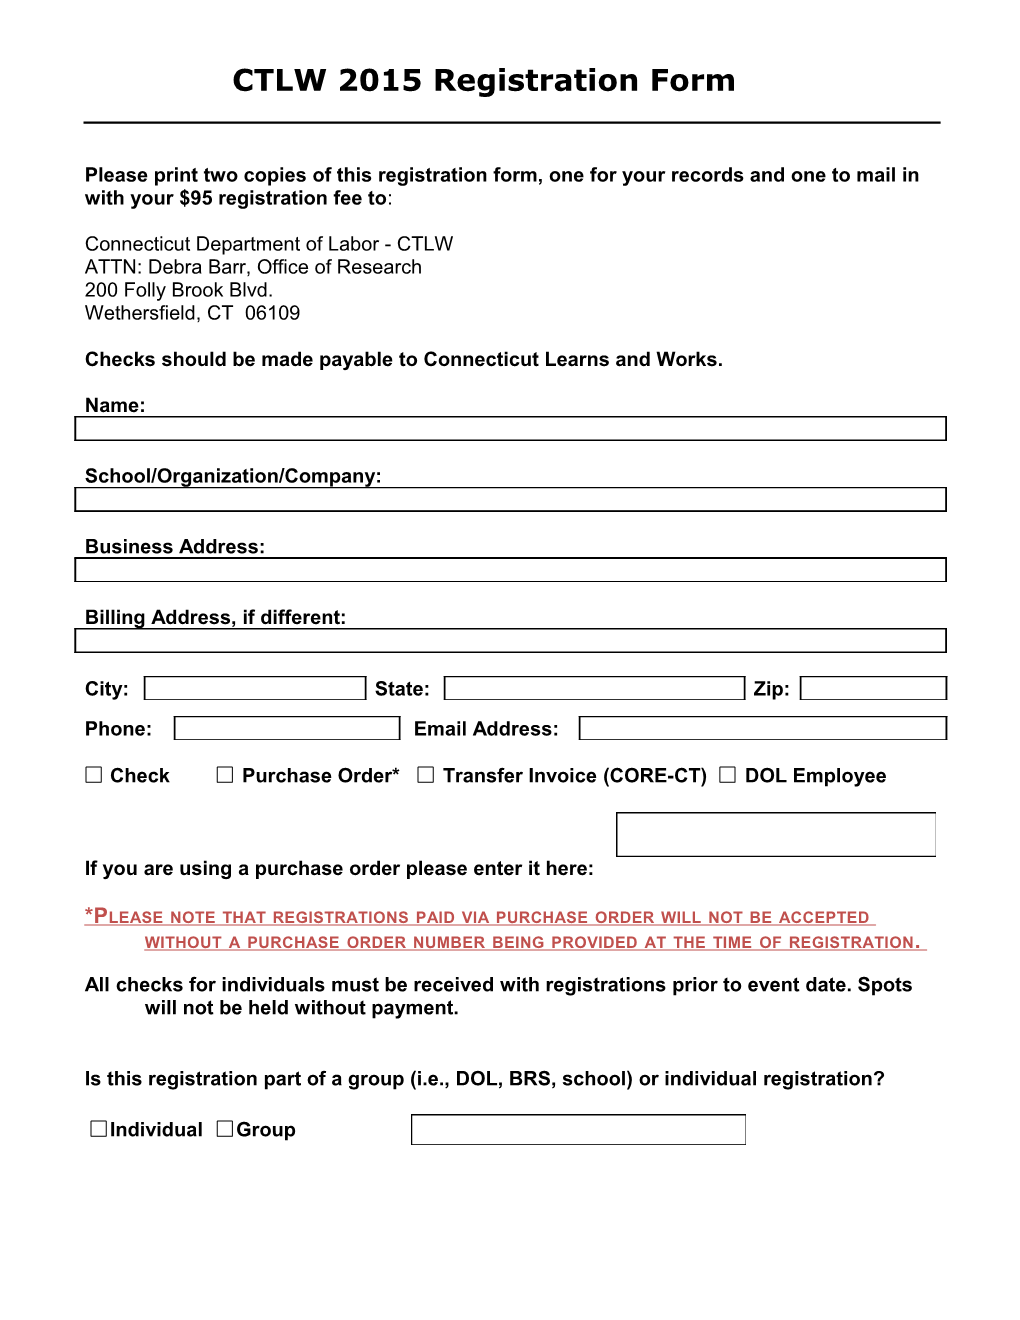 CTLW 2015 Registration Form